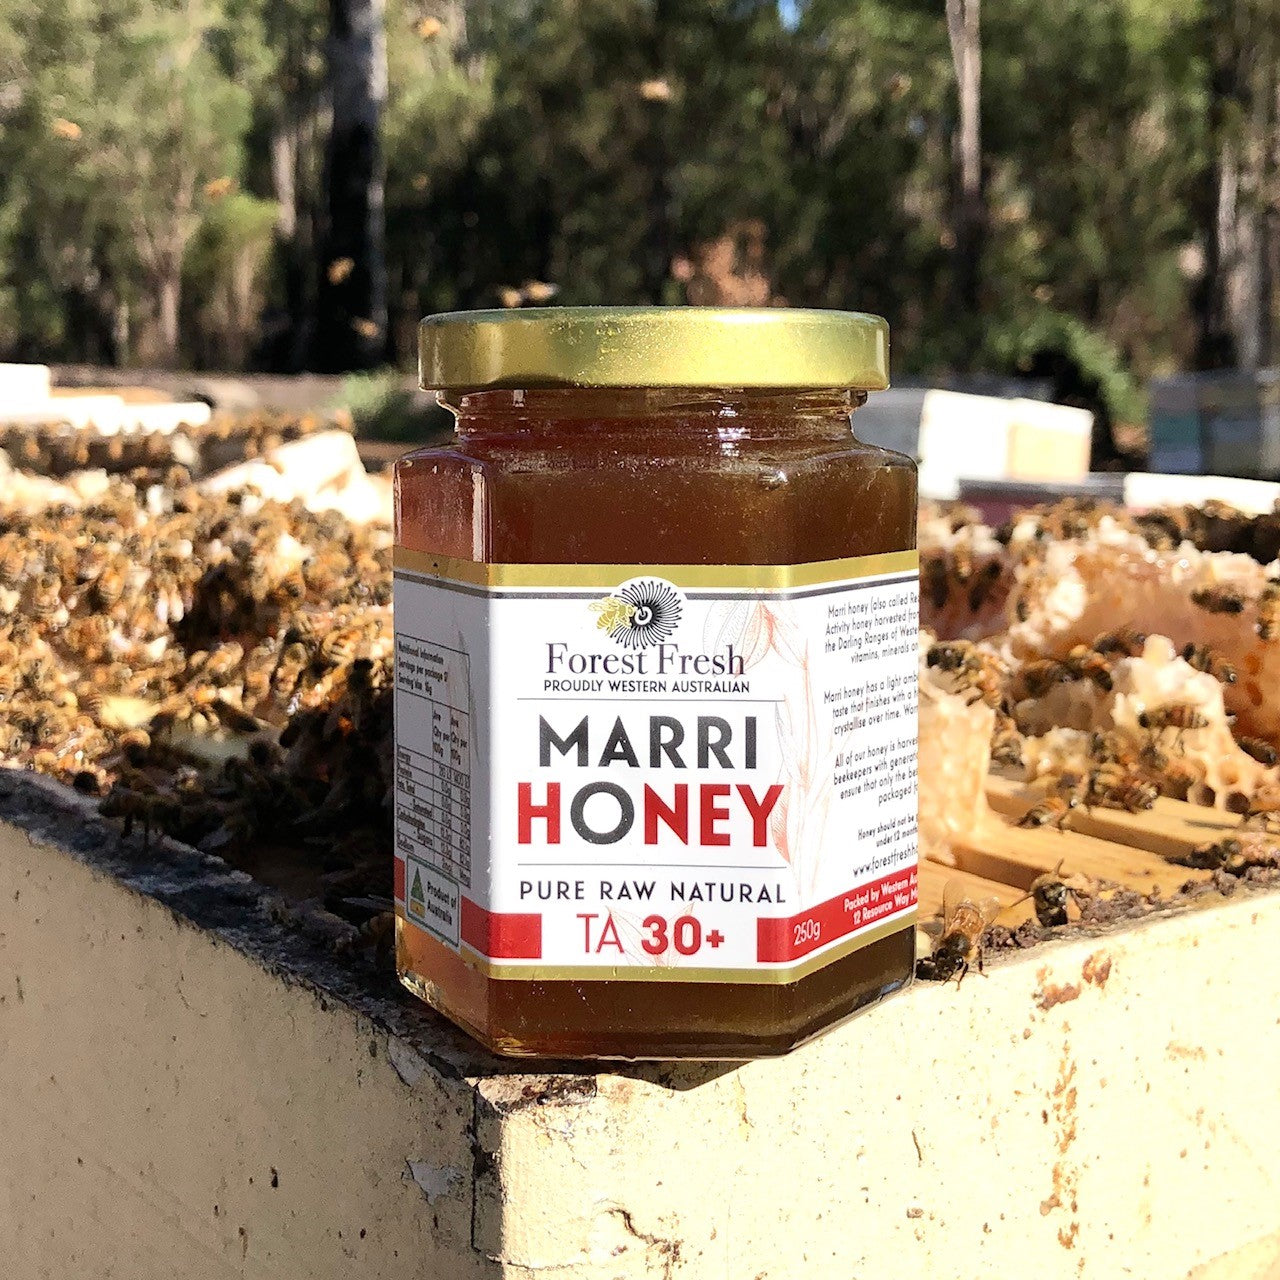 pure raw natural marri honey